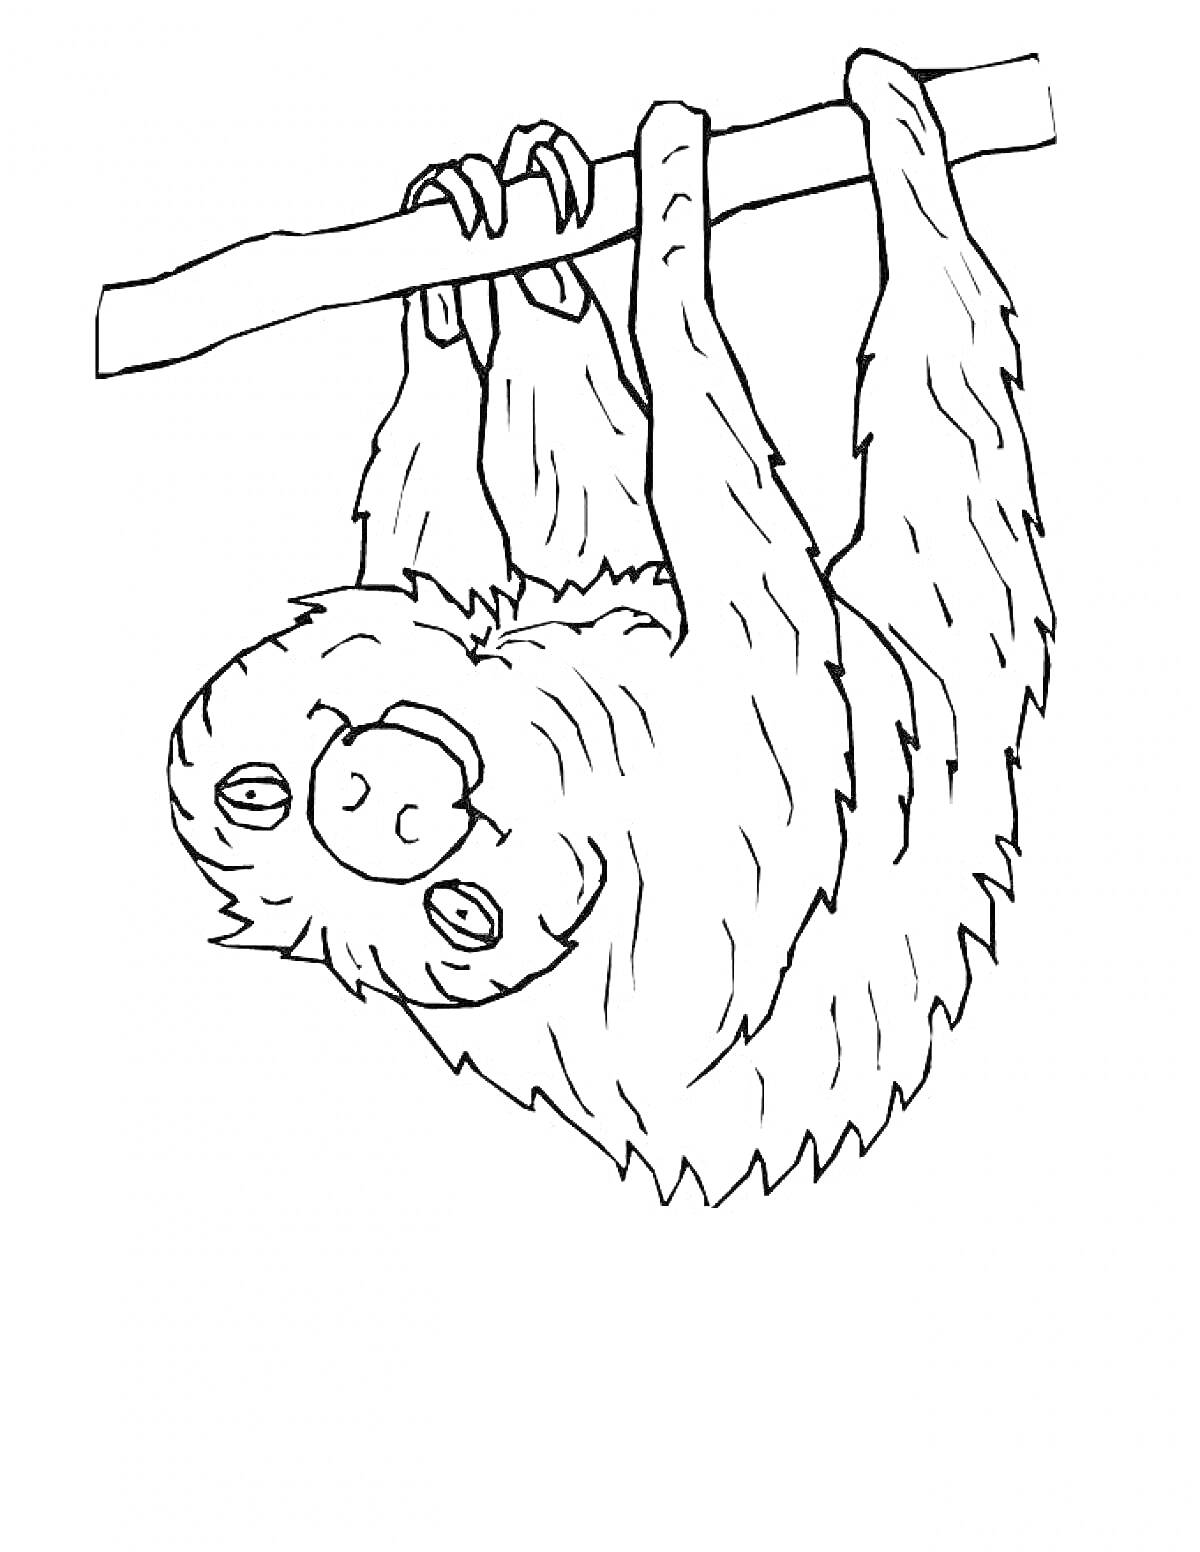 Ленивец, висящий на ветке